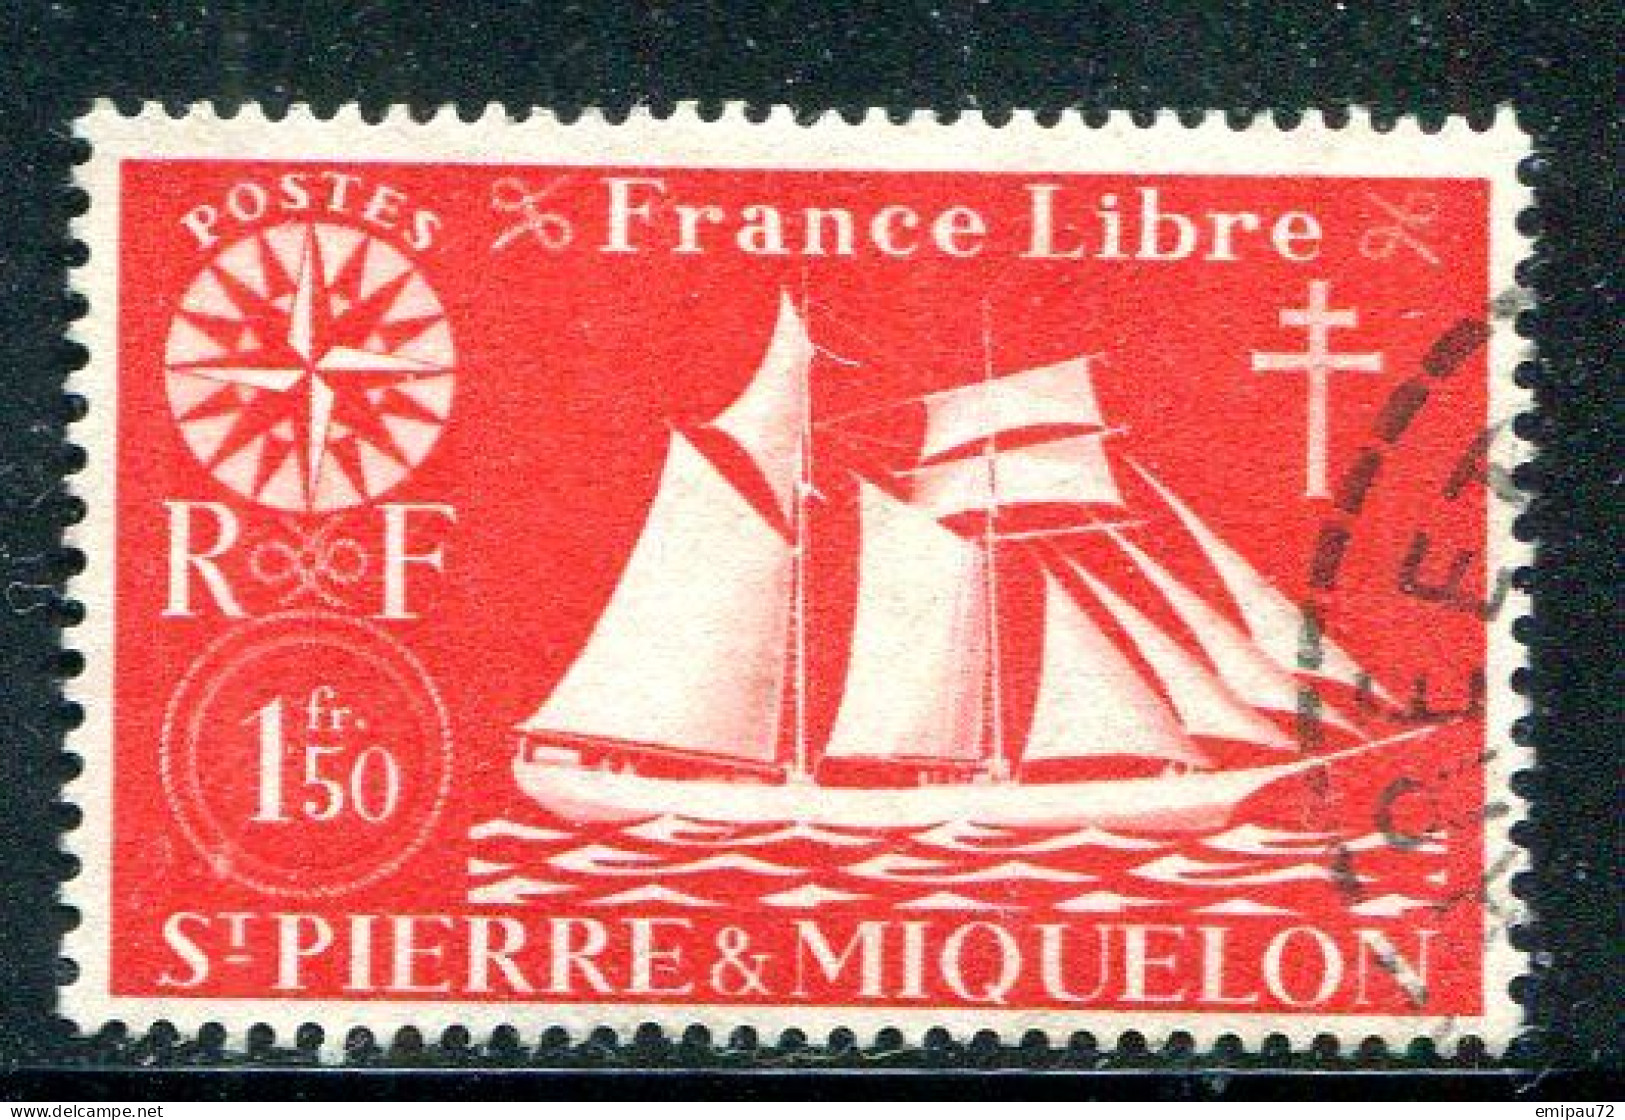 SAINT PIERRE ET MIQUELON- Y&T N°303- Oblitéré - Used Stamps